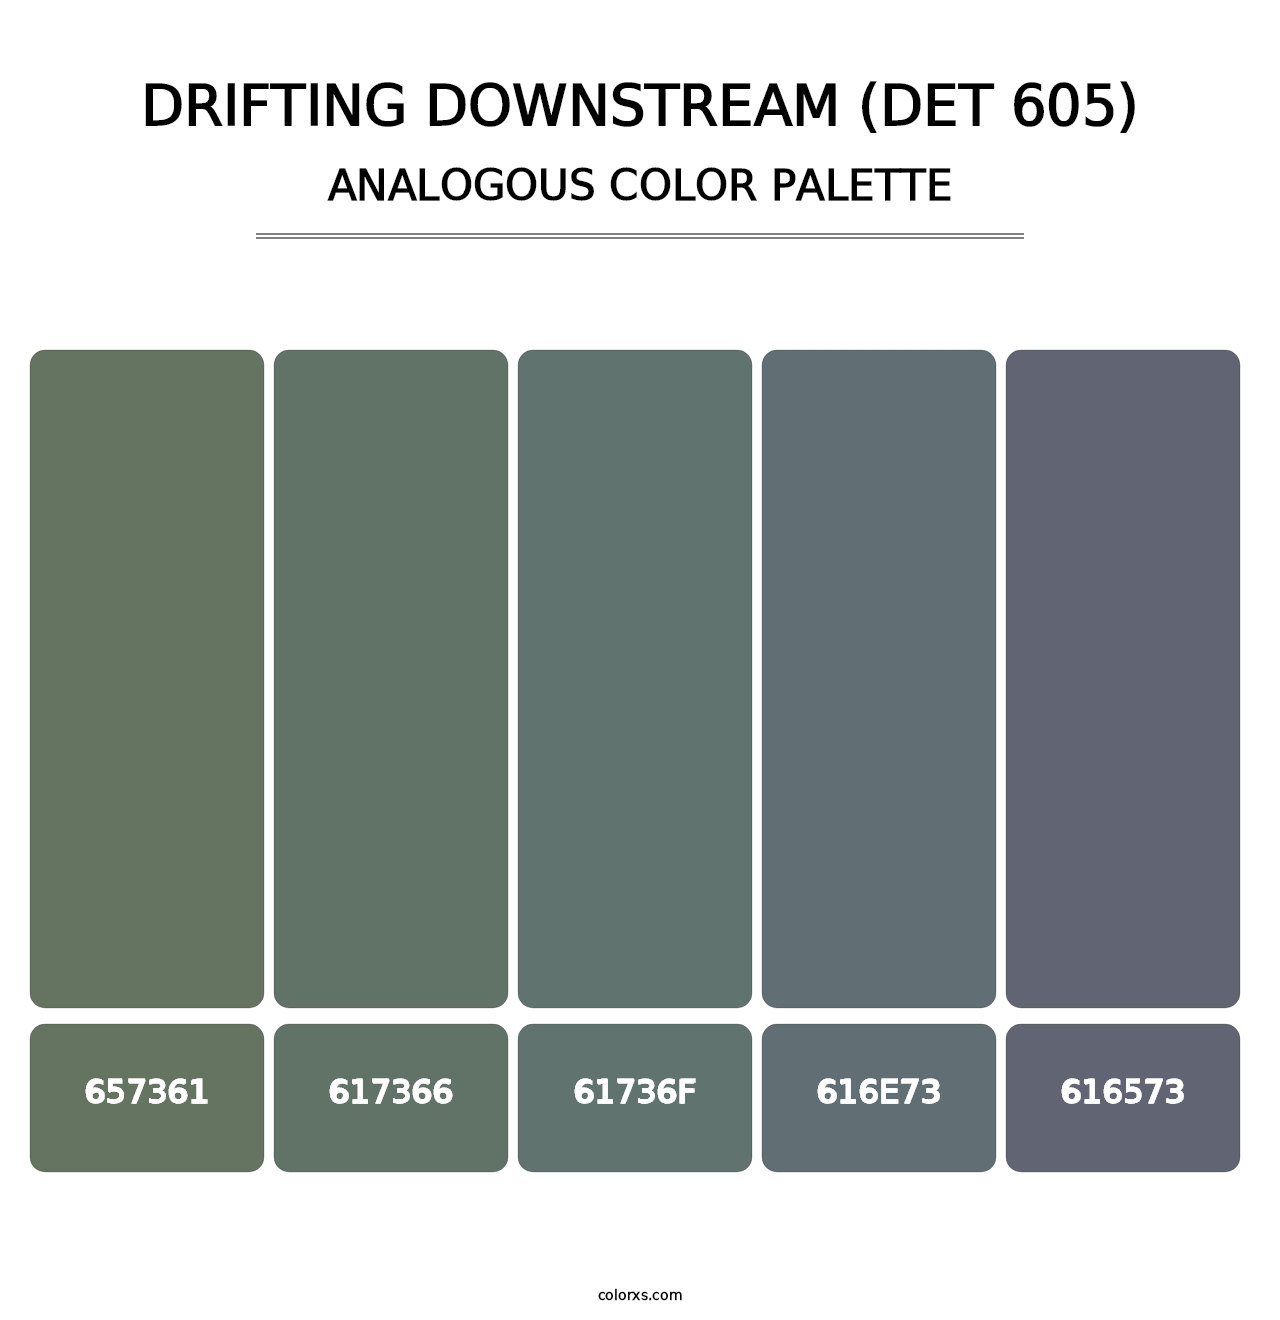 Drifting Downstream (DET 605) - Analogous Color Palette